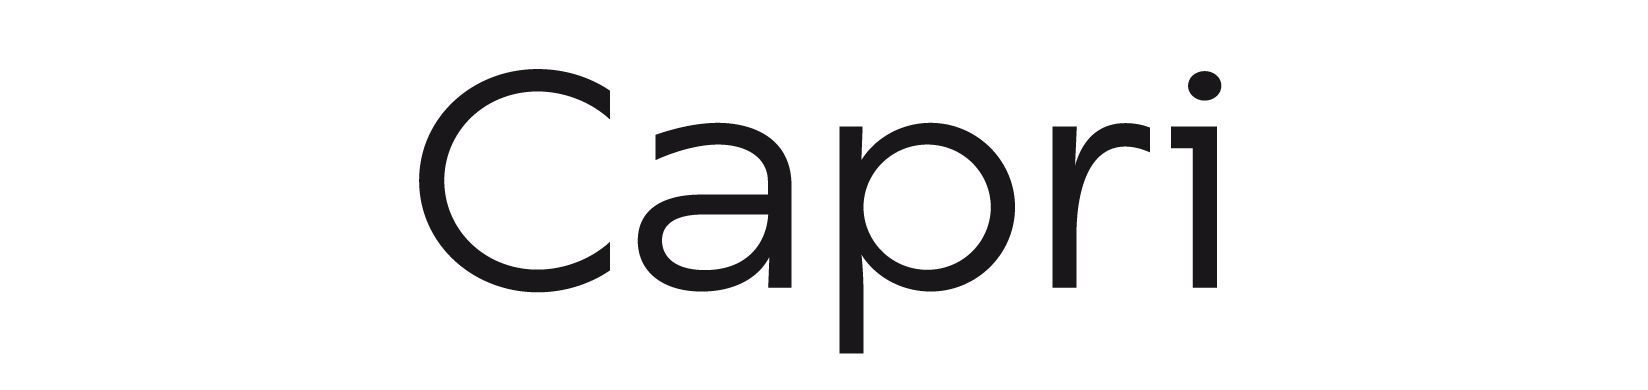 Capri Typeface